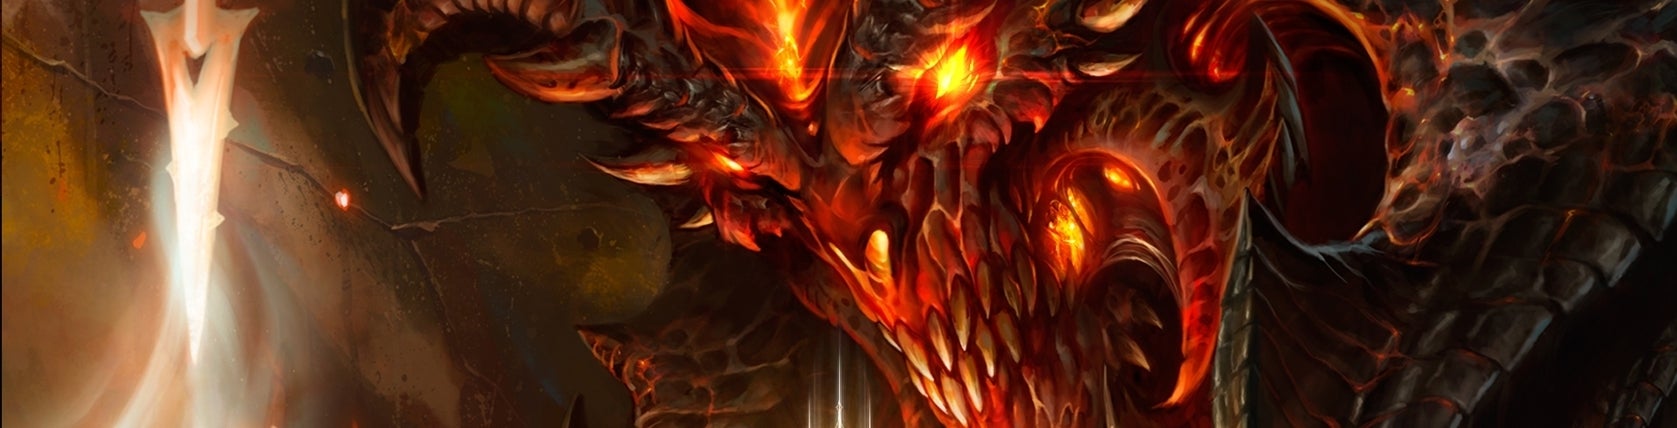 Imagen para Primeras impresiones de Diablo III en PS3